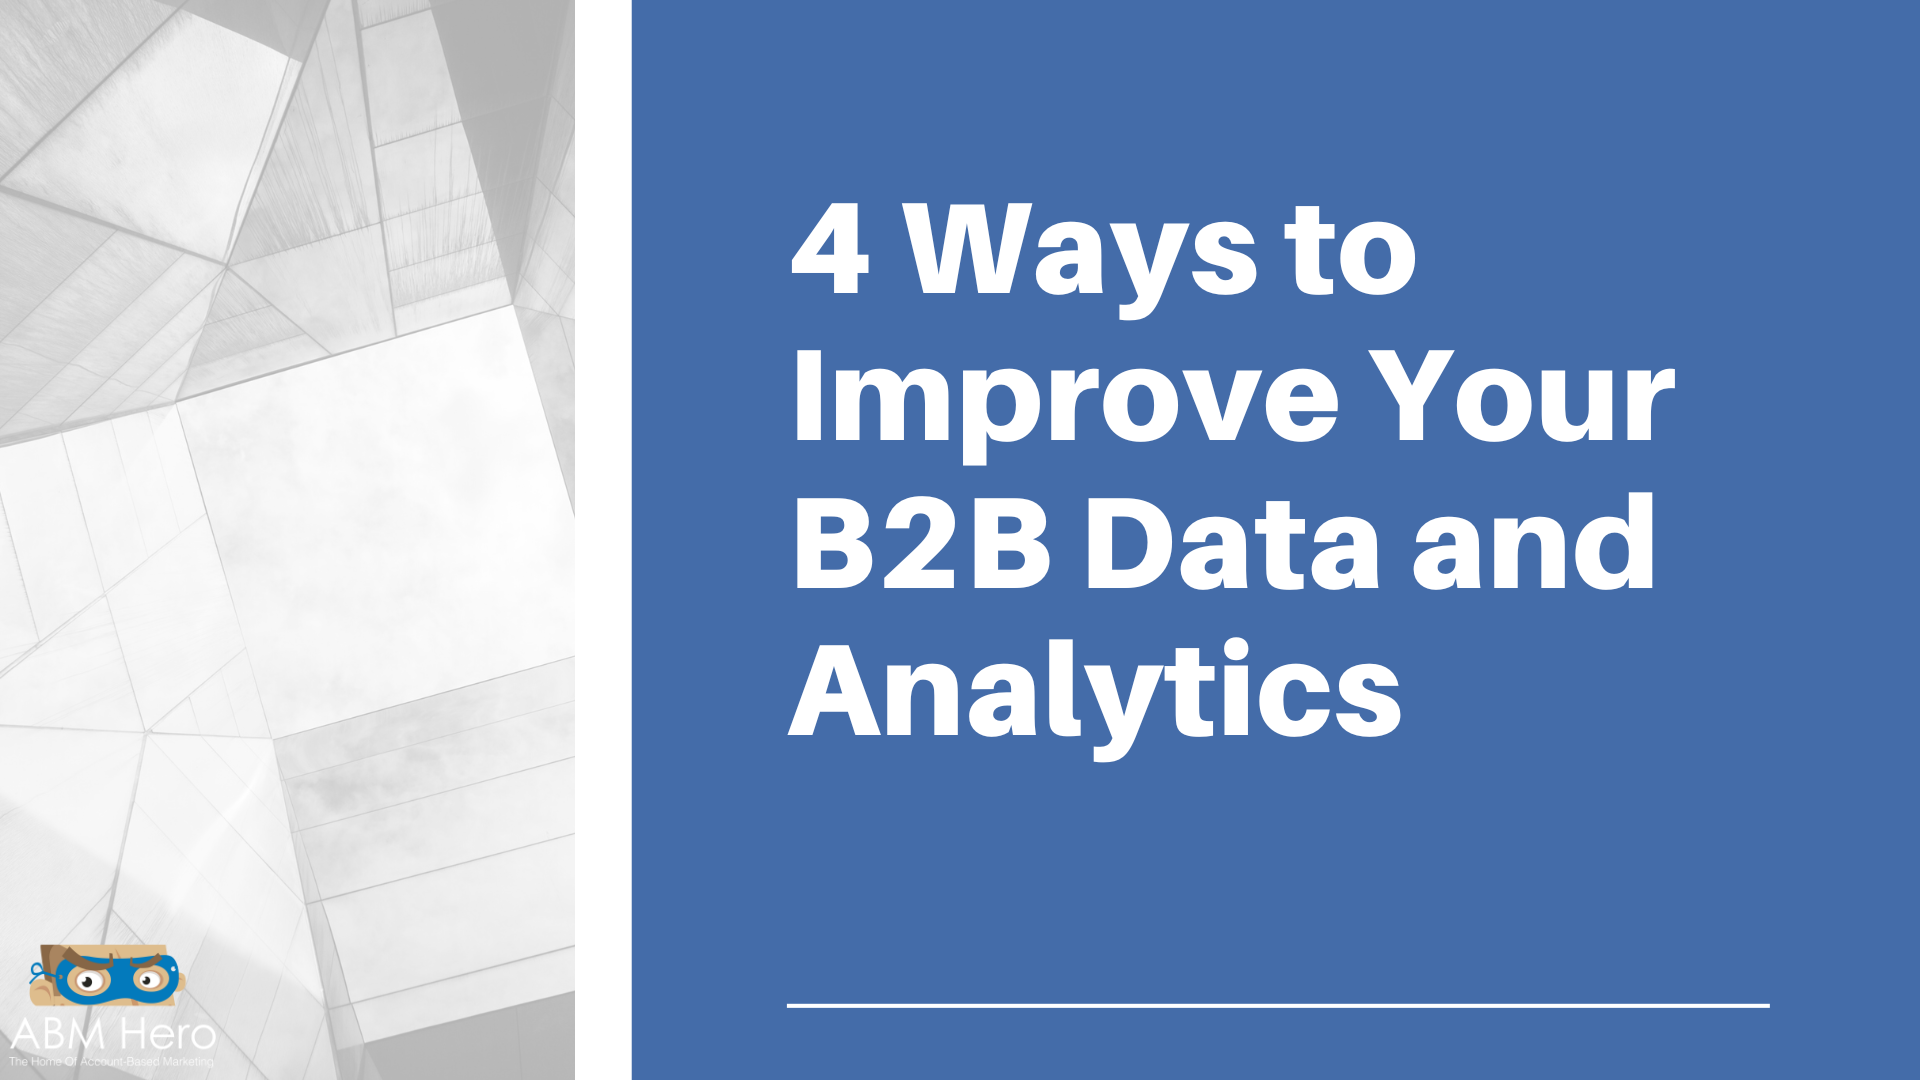 4 Ways to Improve Your B2B Data and Analytics